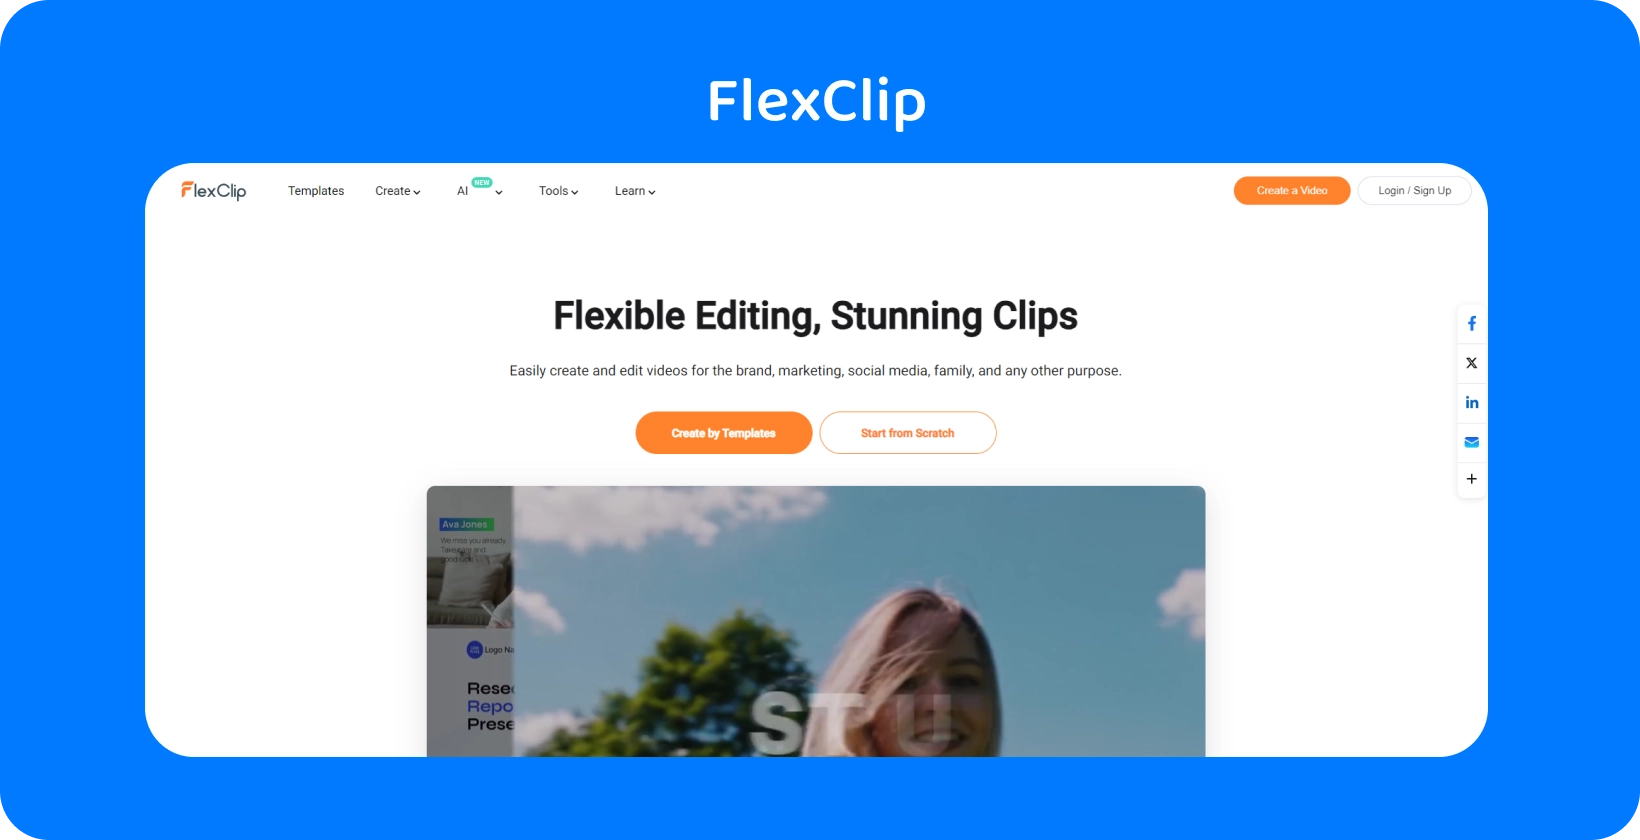 A interface Text to Speech Video Maker do FlexClip mostra uma maneira simples e eficiente de converter texto em fala AI realista.